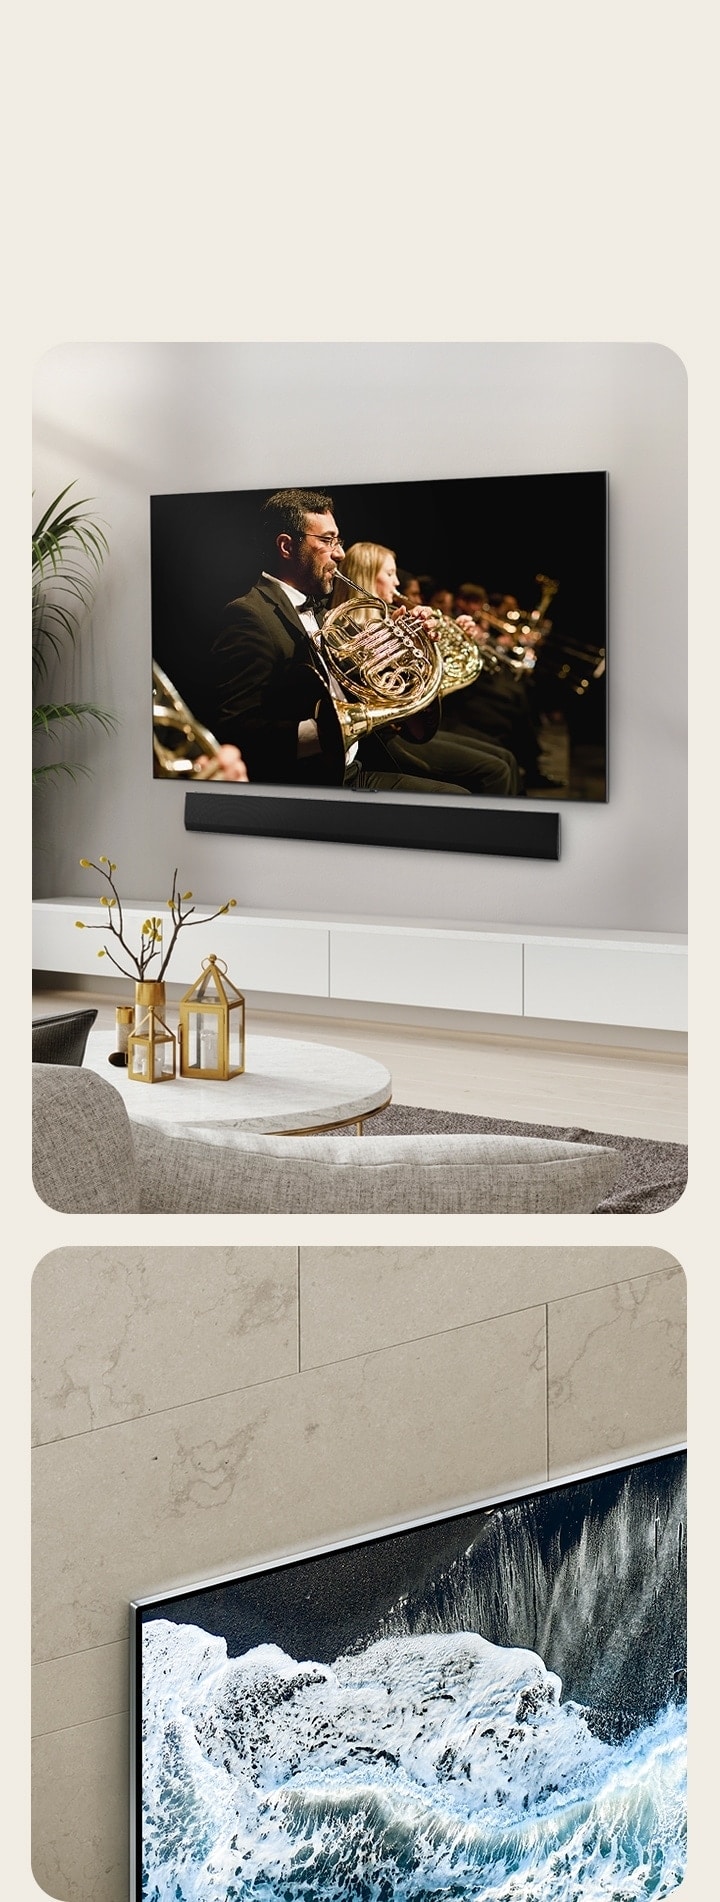 Телевизор LG OLED, OLED G4 под углом относительно мраморной стены, демонстрирующий, как он сливается с стеной.   Телевизор LG OLED, OLED G4 и саундбар LG в чистом жилом помещении, установленные плоско на стене, с оркестровым выступлением на экране. 